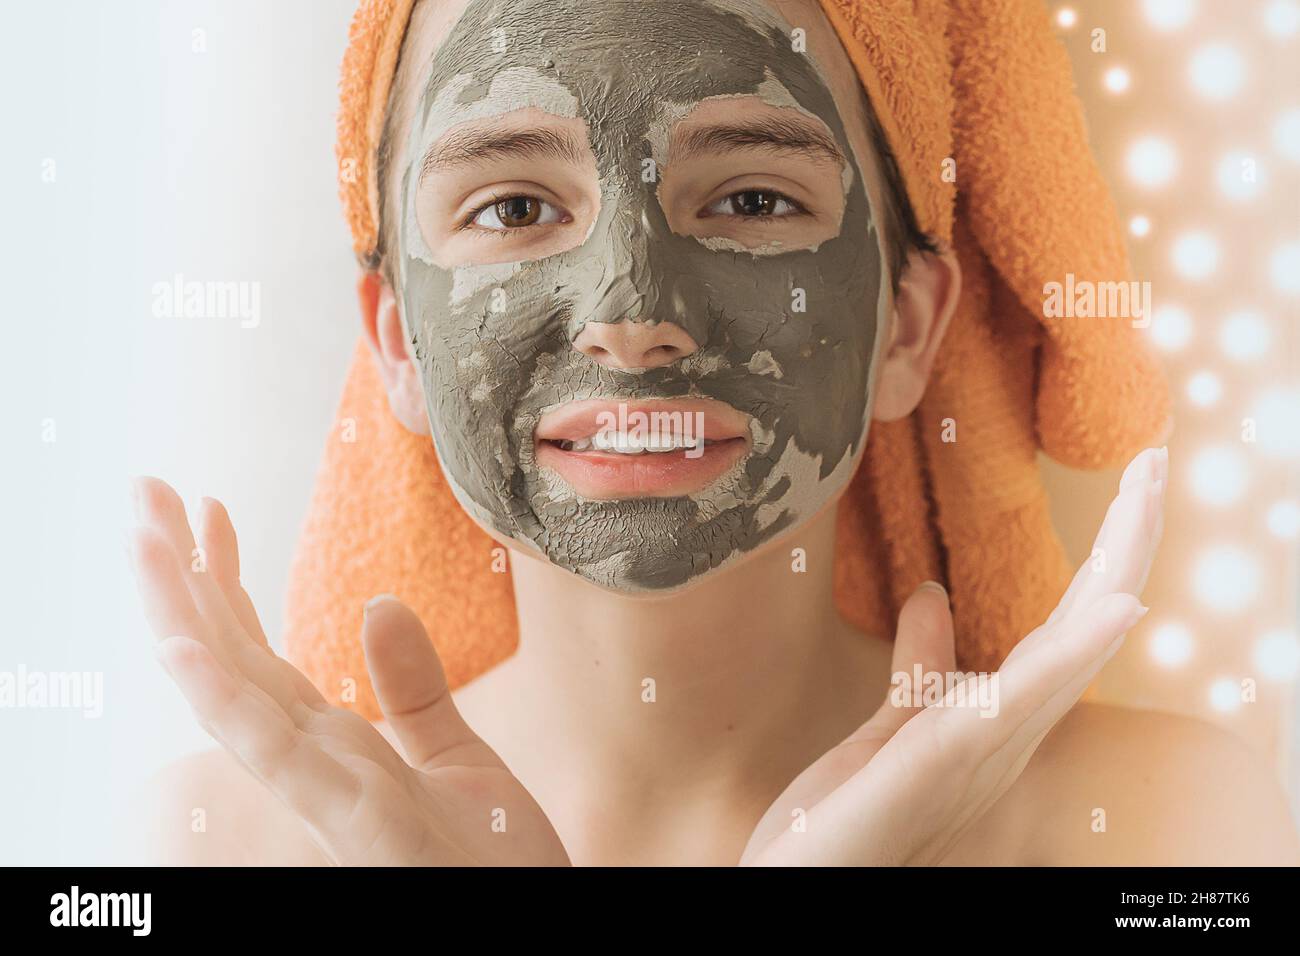 Modello caucasico ragazza adolescente in asciugamano sulla testa indossare maschera cosmetica fatto di verde guarigione argilla su sfondo sfocato di luci di ghirlanda festive Foto Stock